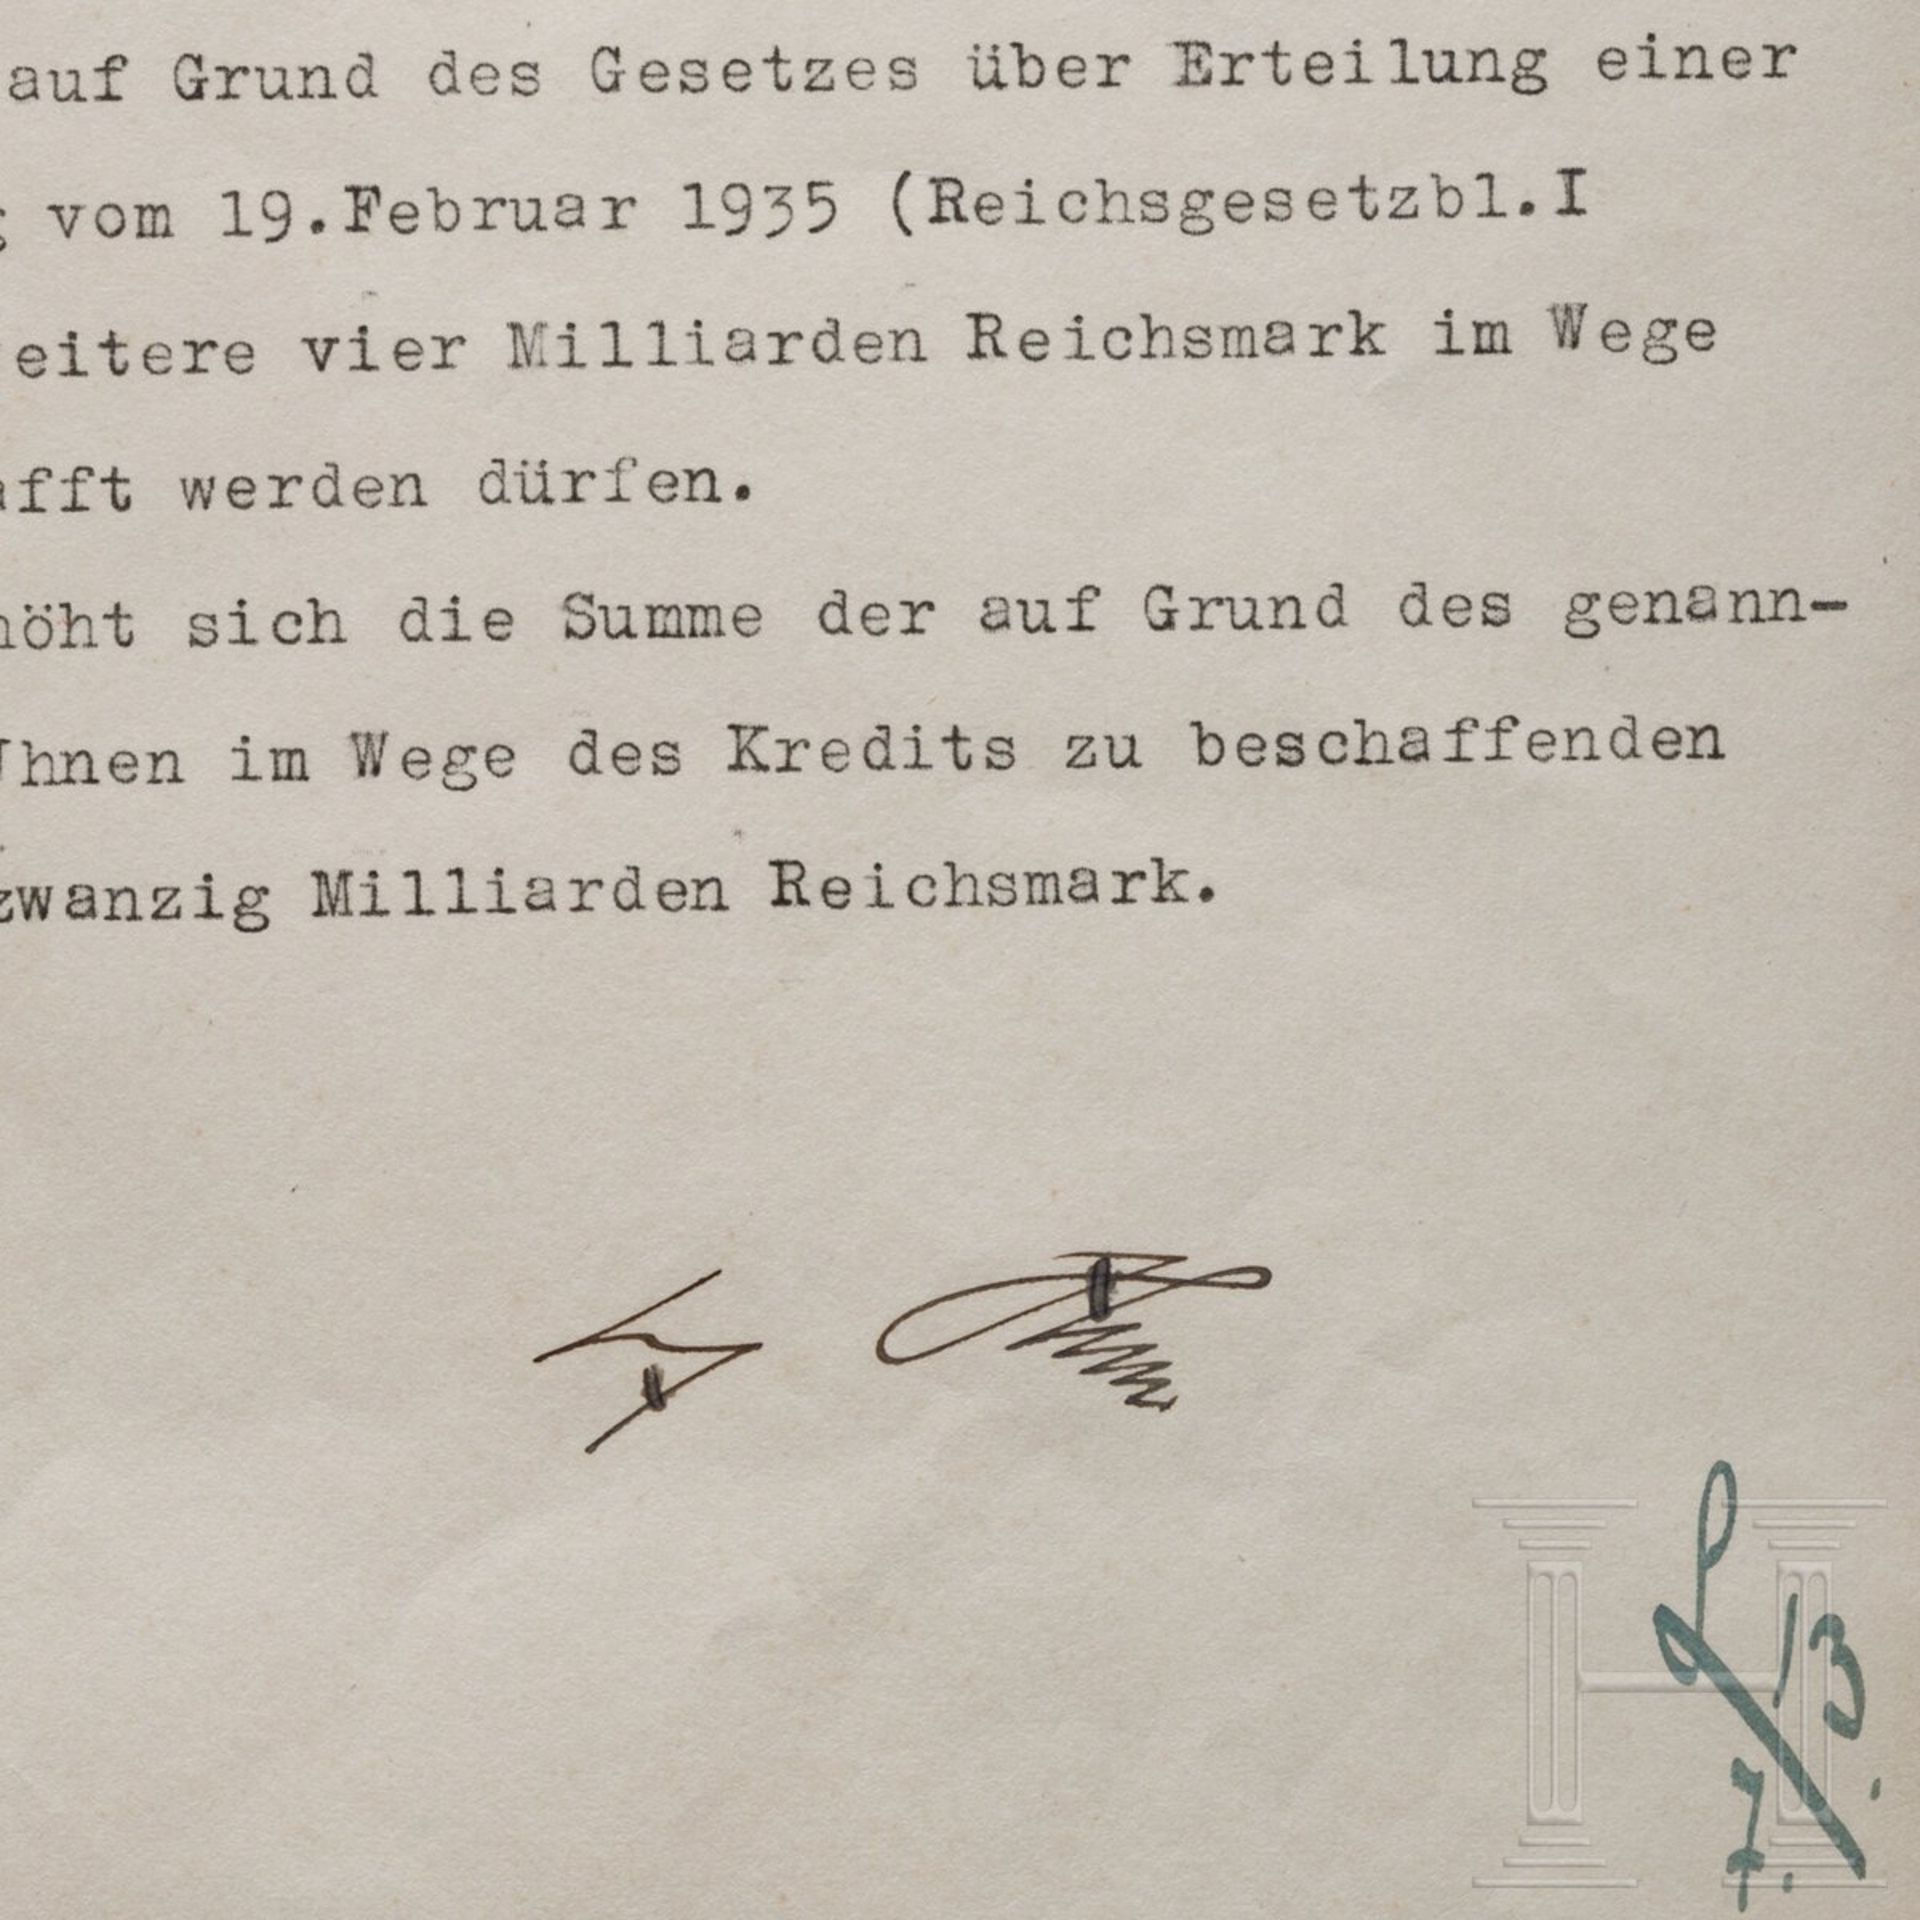 Adolf Hitler - Kreditermächtigung vom 13. Juli 1938 mit einer Erhöhung von 17 auf 21 Milliarden RM - Image 2 of 3